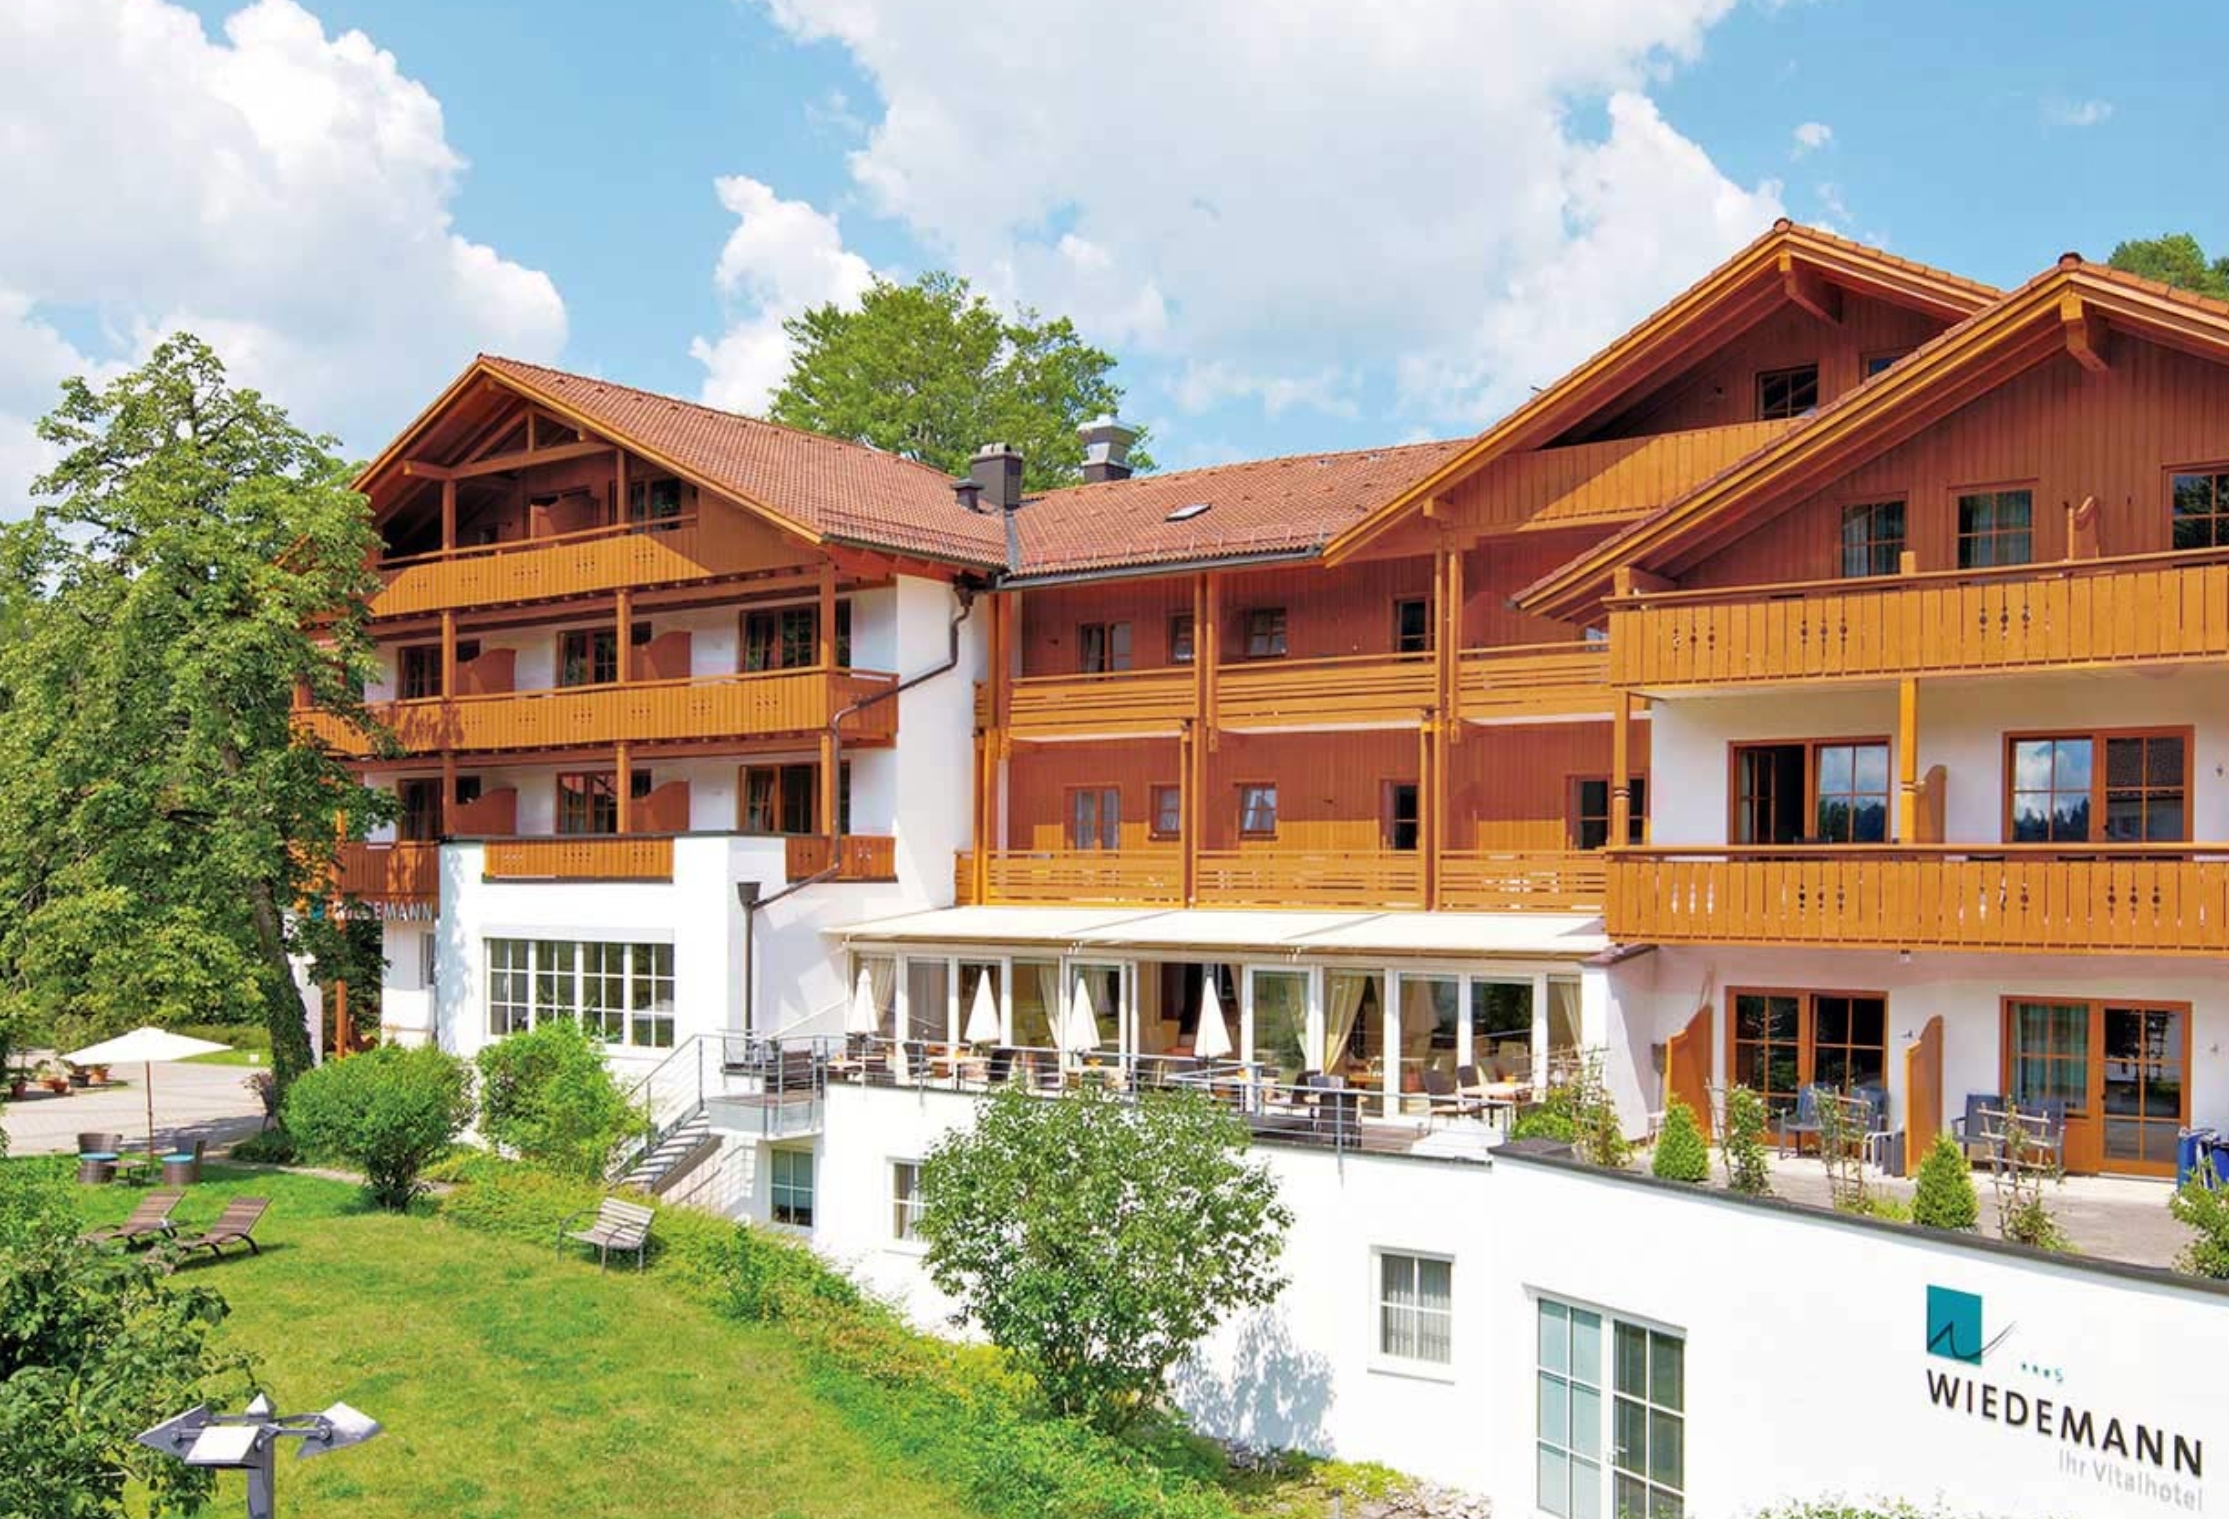 Rehaklink Kurhotel Wiedemann in Füssen / Bad Faulenbach